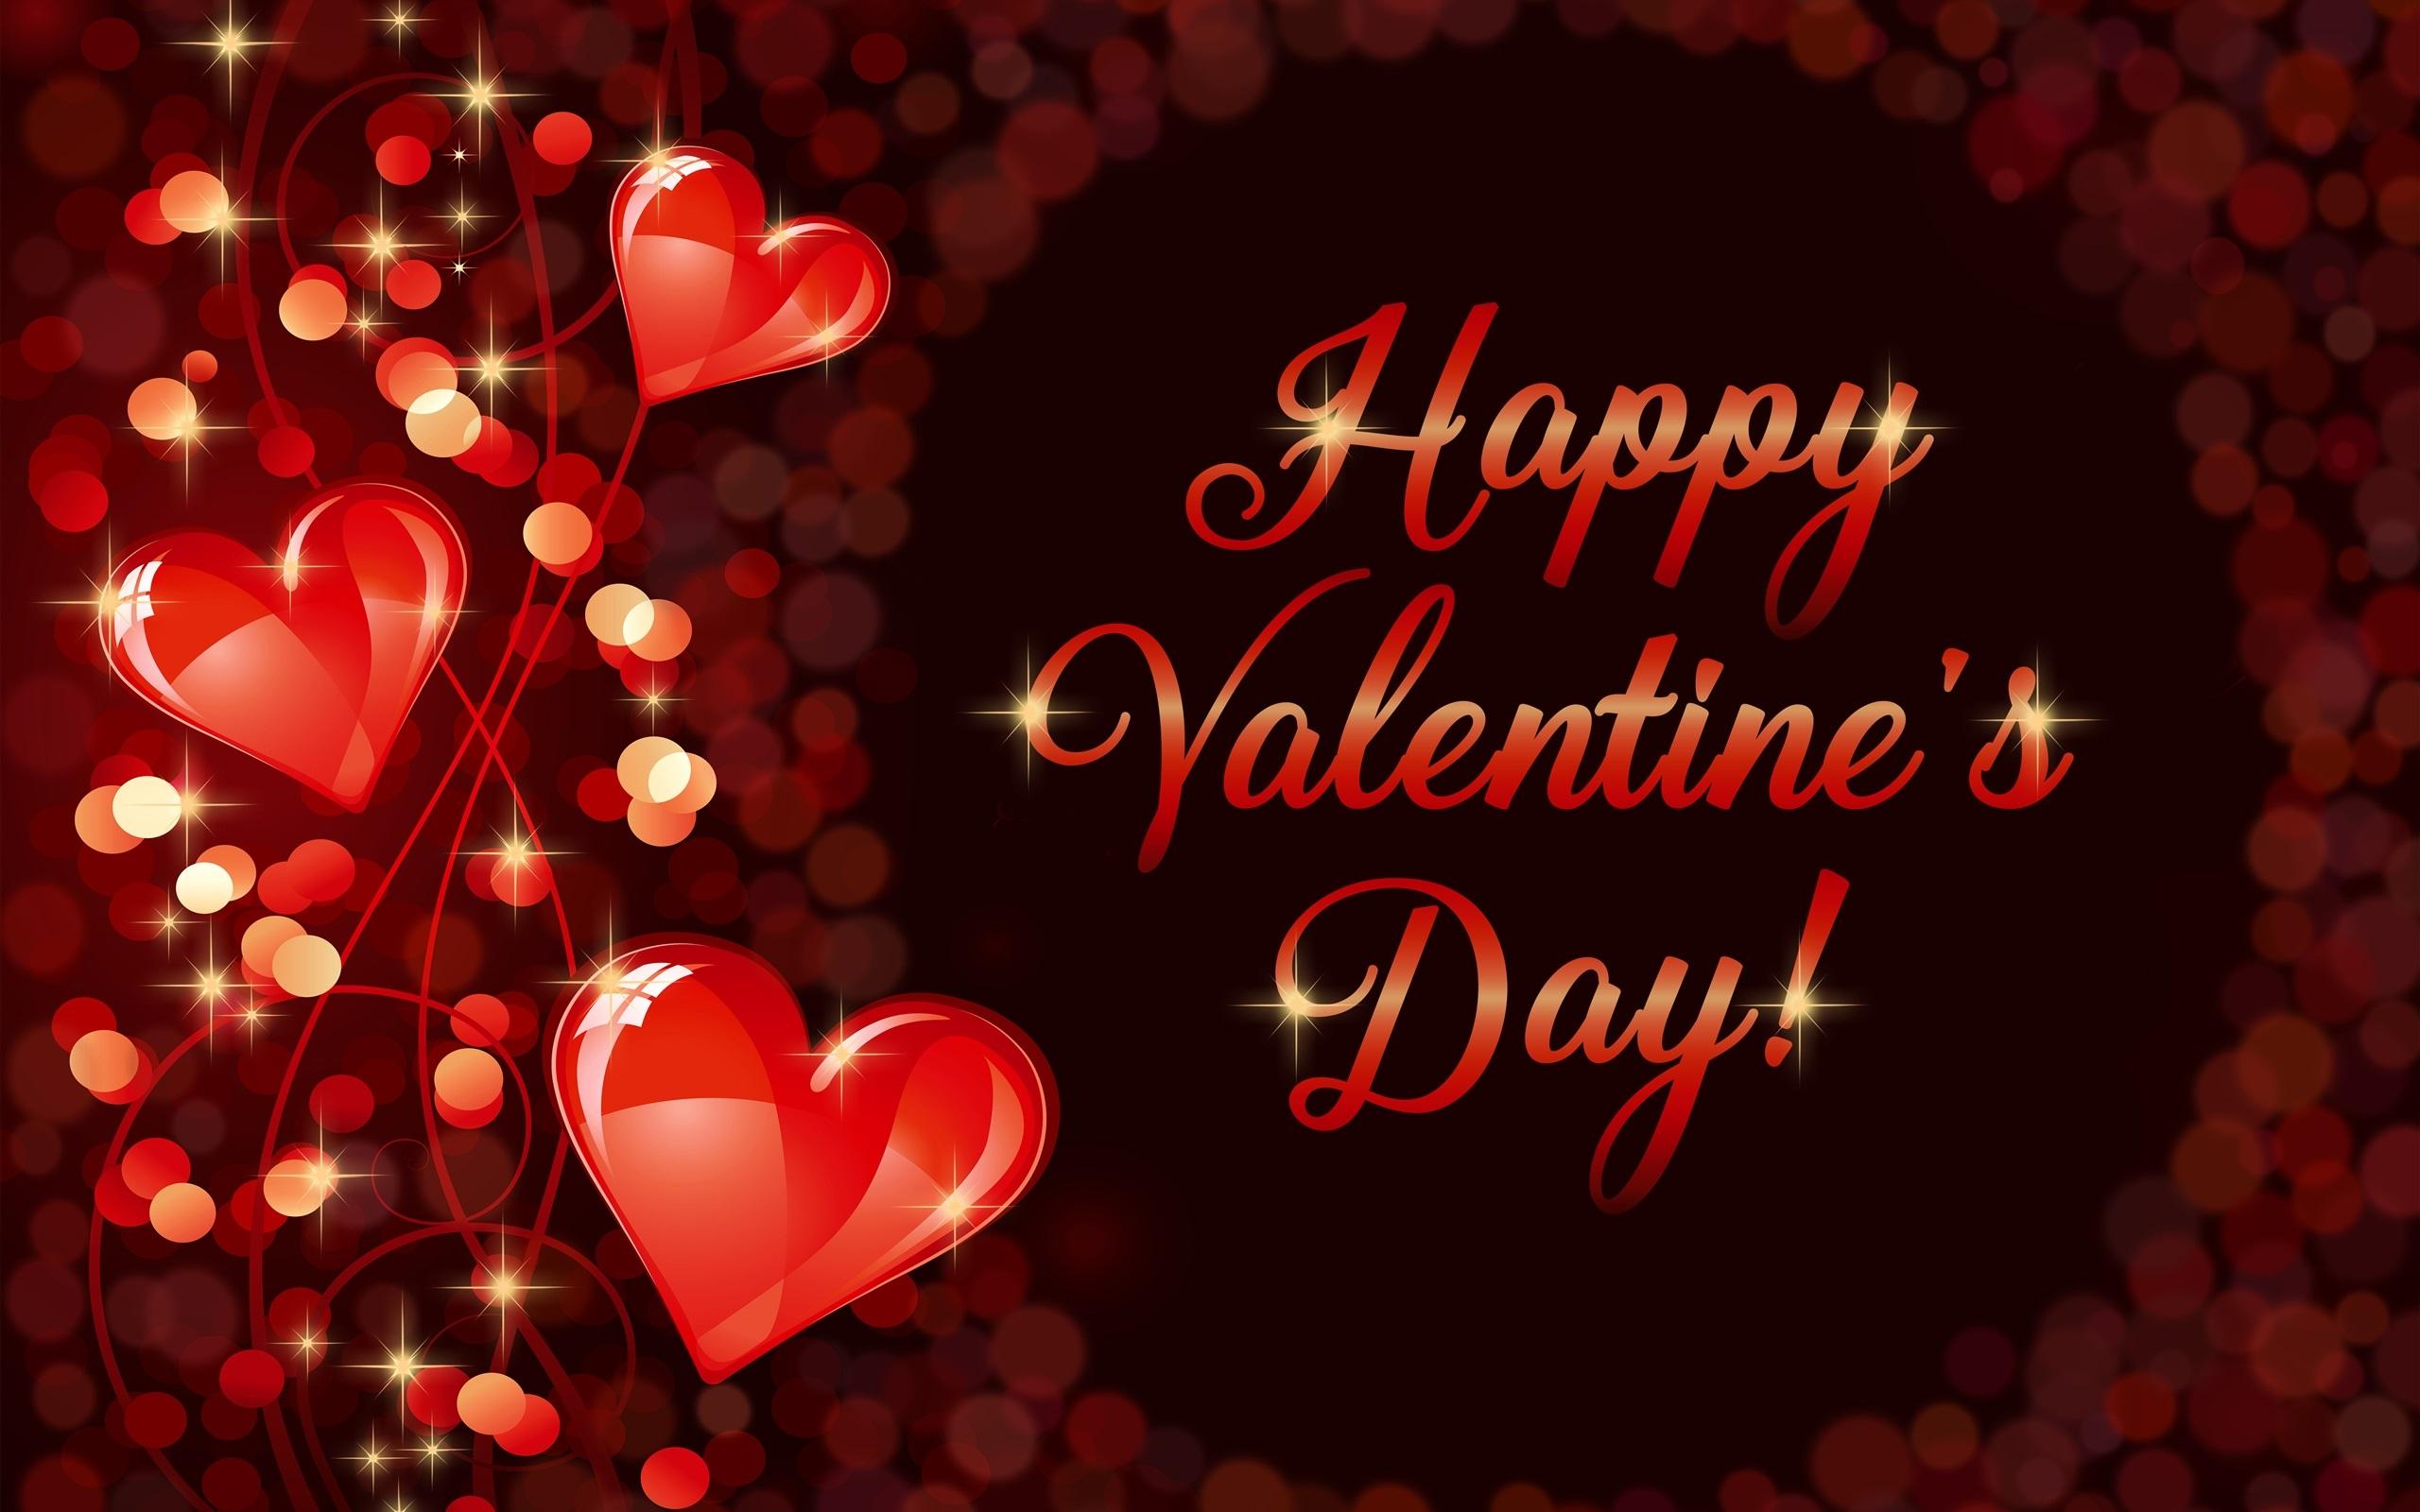 Wallpaper Happy Valentine's Day, romantic, love, hearts 2560x1600 HD Picture, Image